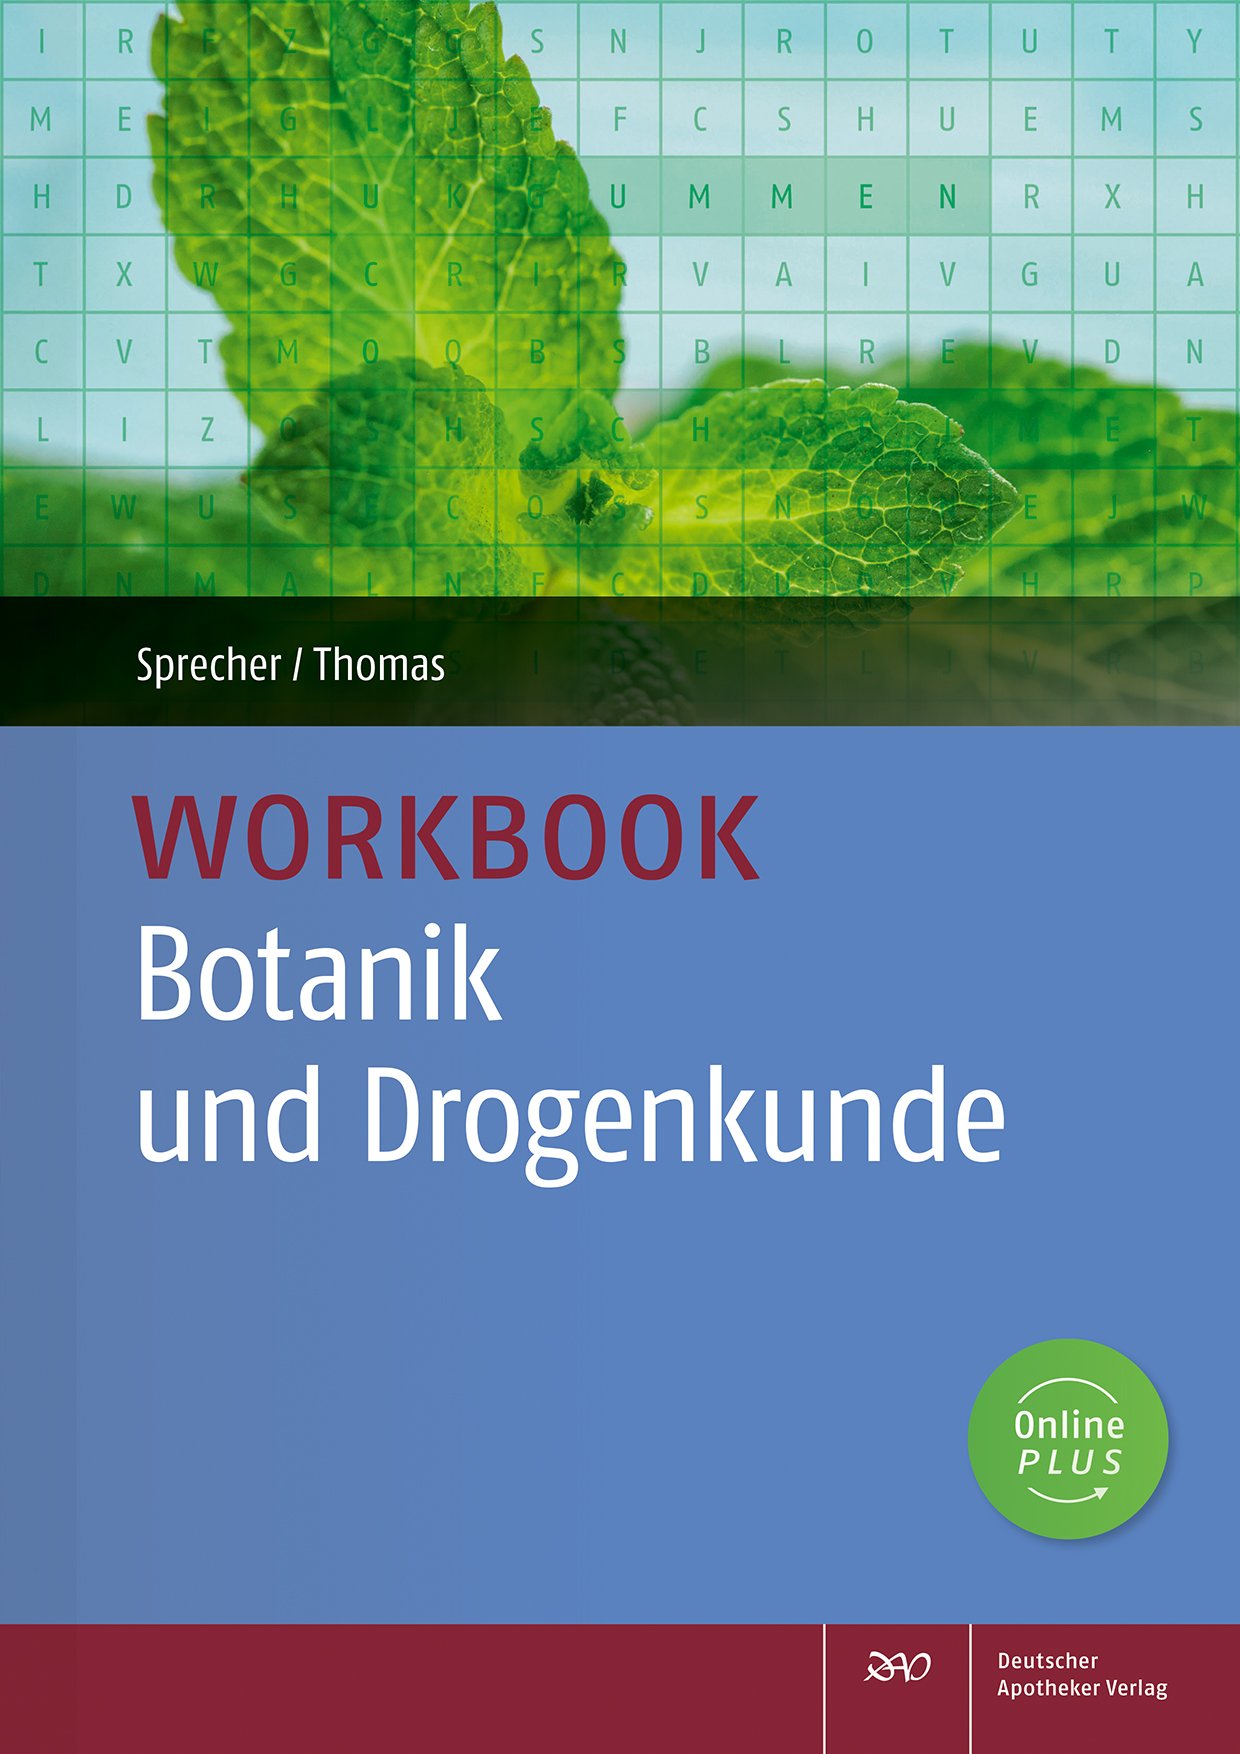 Workbook Botanik und Drogenkunde